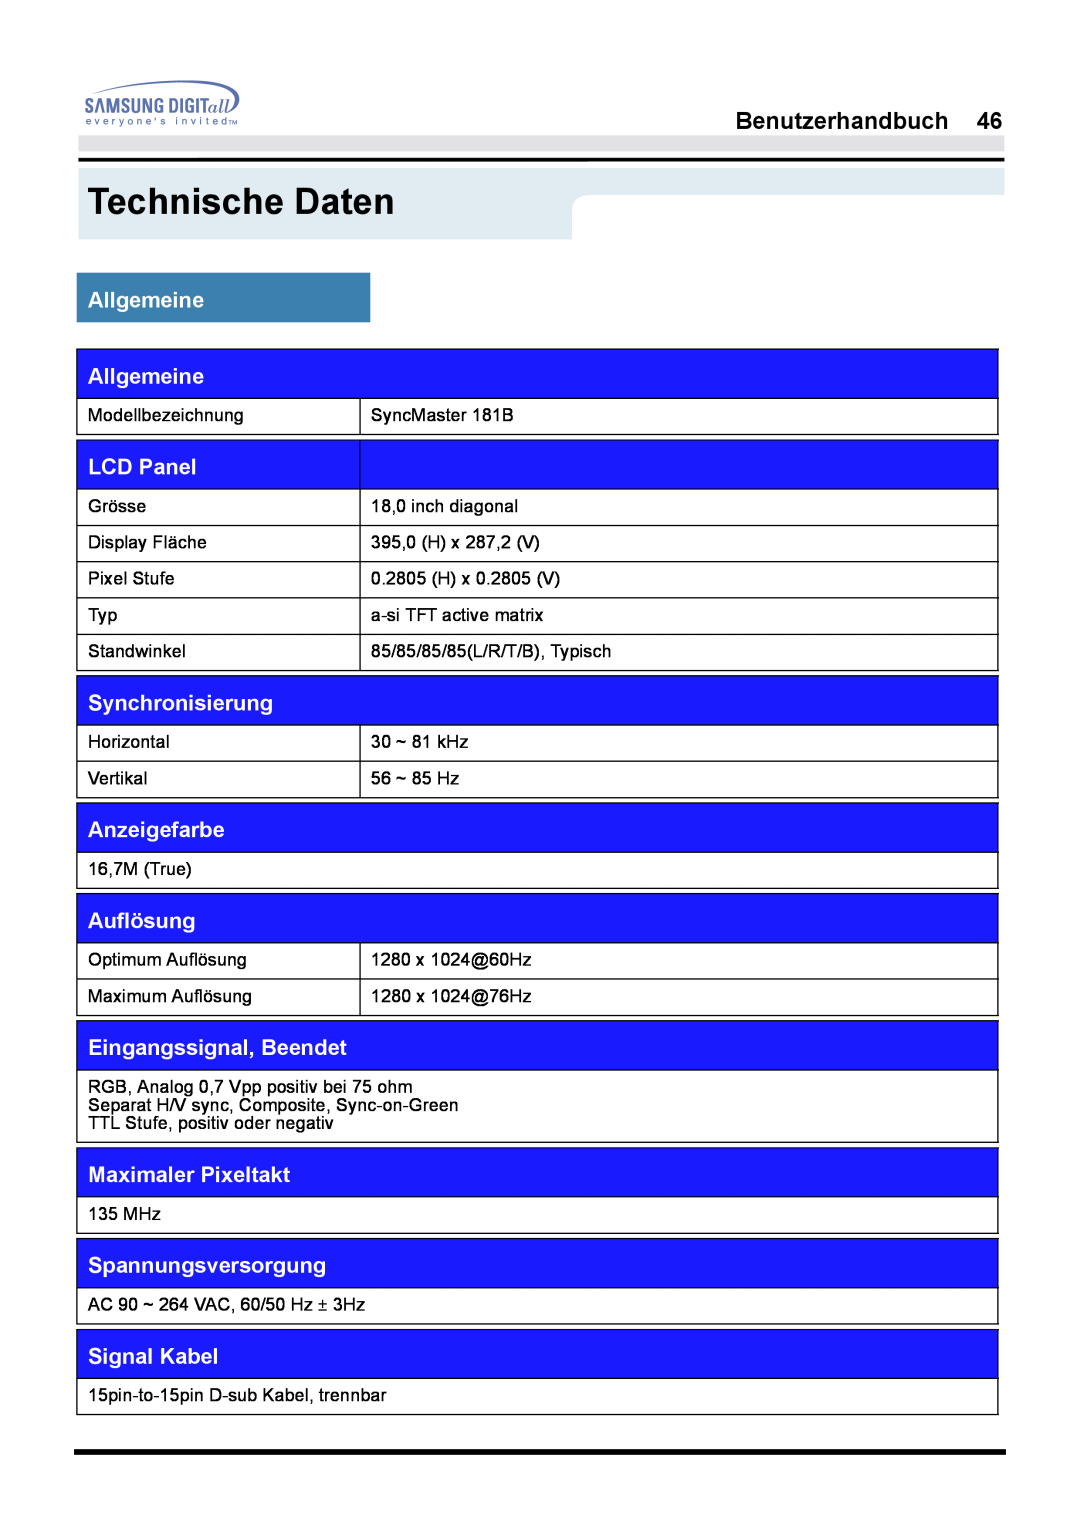 Samsung GH17ESSNZ/EDC Technische Daten, Benutzerhandbuch, Allgemeine Allgemeine, LCD Panel, Synchronisierung, Anzeigefarbe 